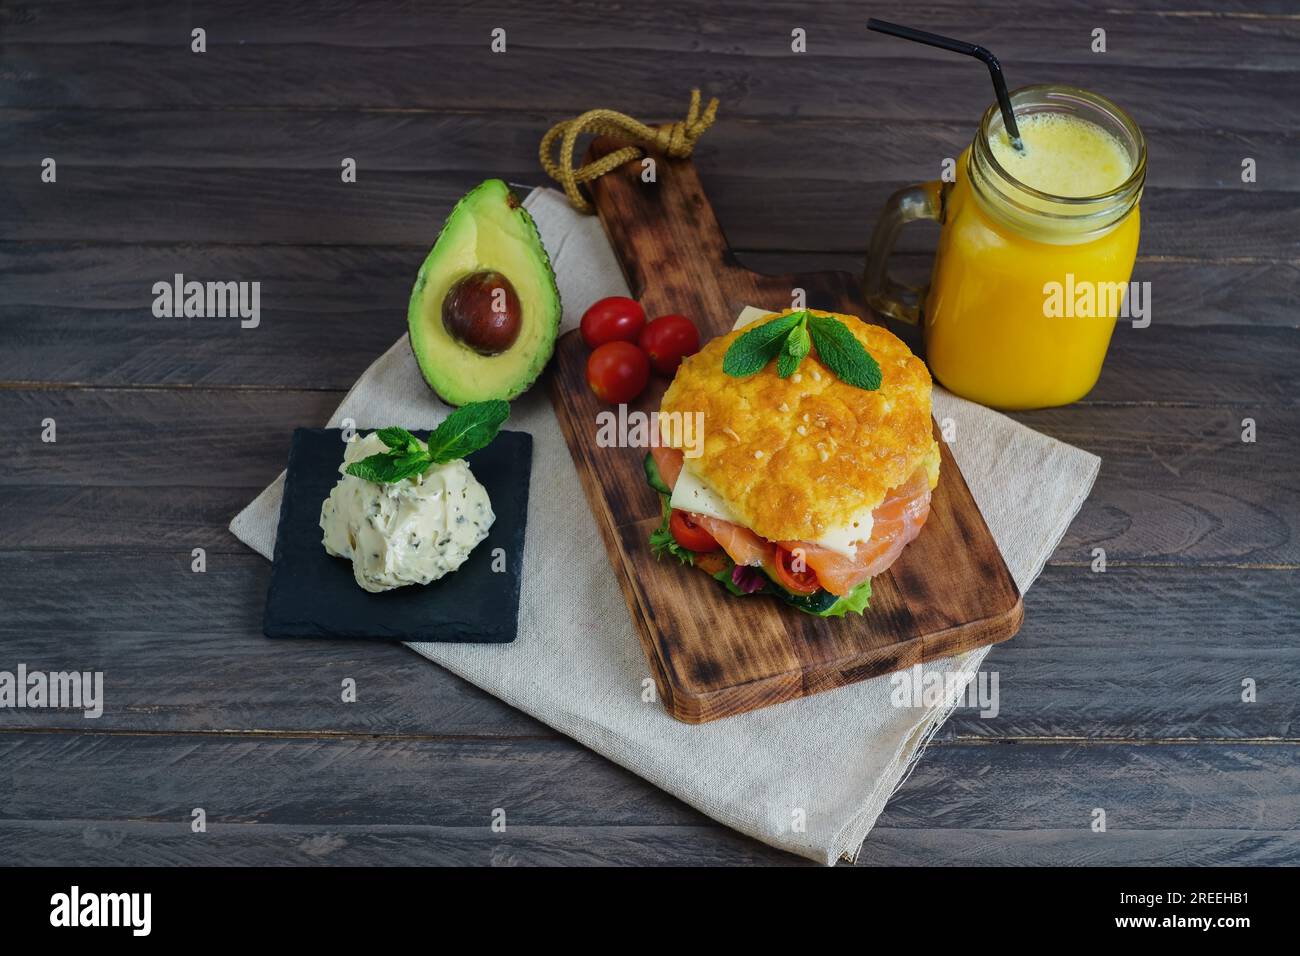 Ketogenes Diät-Sandwich mit Lachs, Käse, Tomaten und Gemüse das Brot wird glutenfrei mit Käse und Mandeln, Glas mit Orangensaft hergestellt Stockfoto